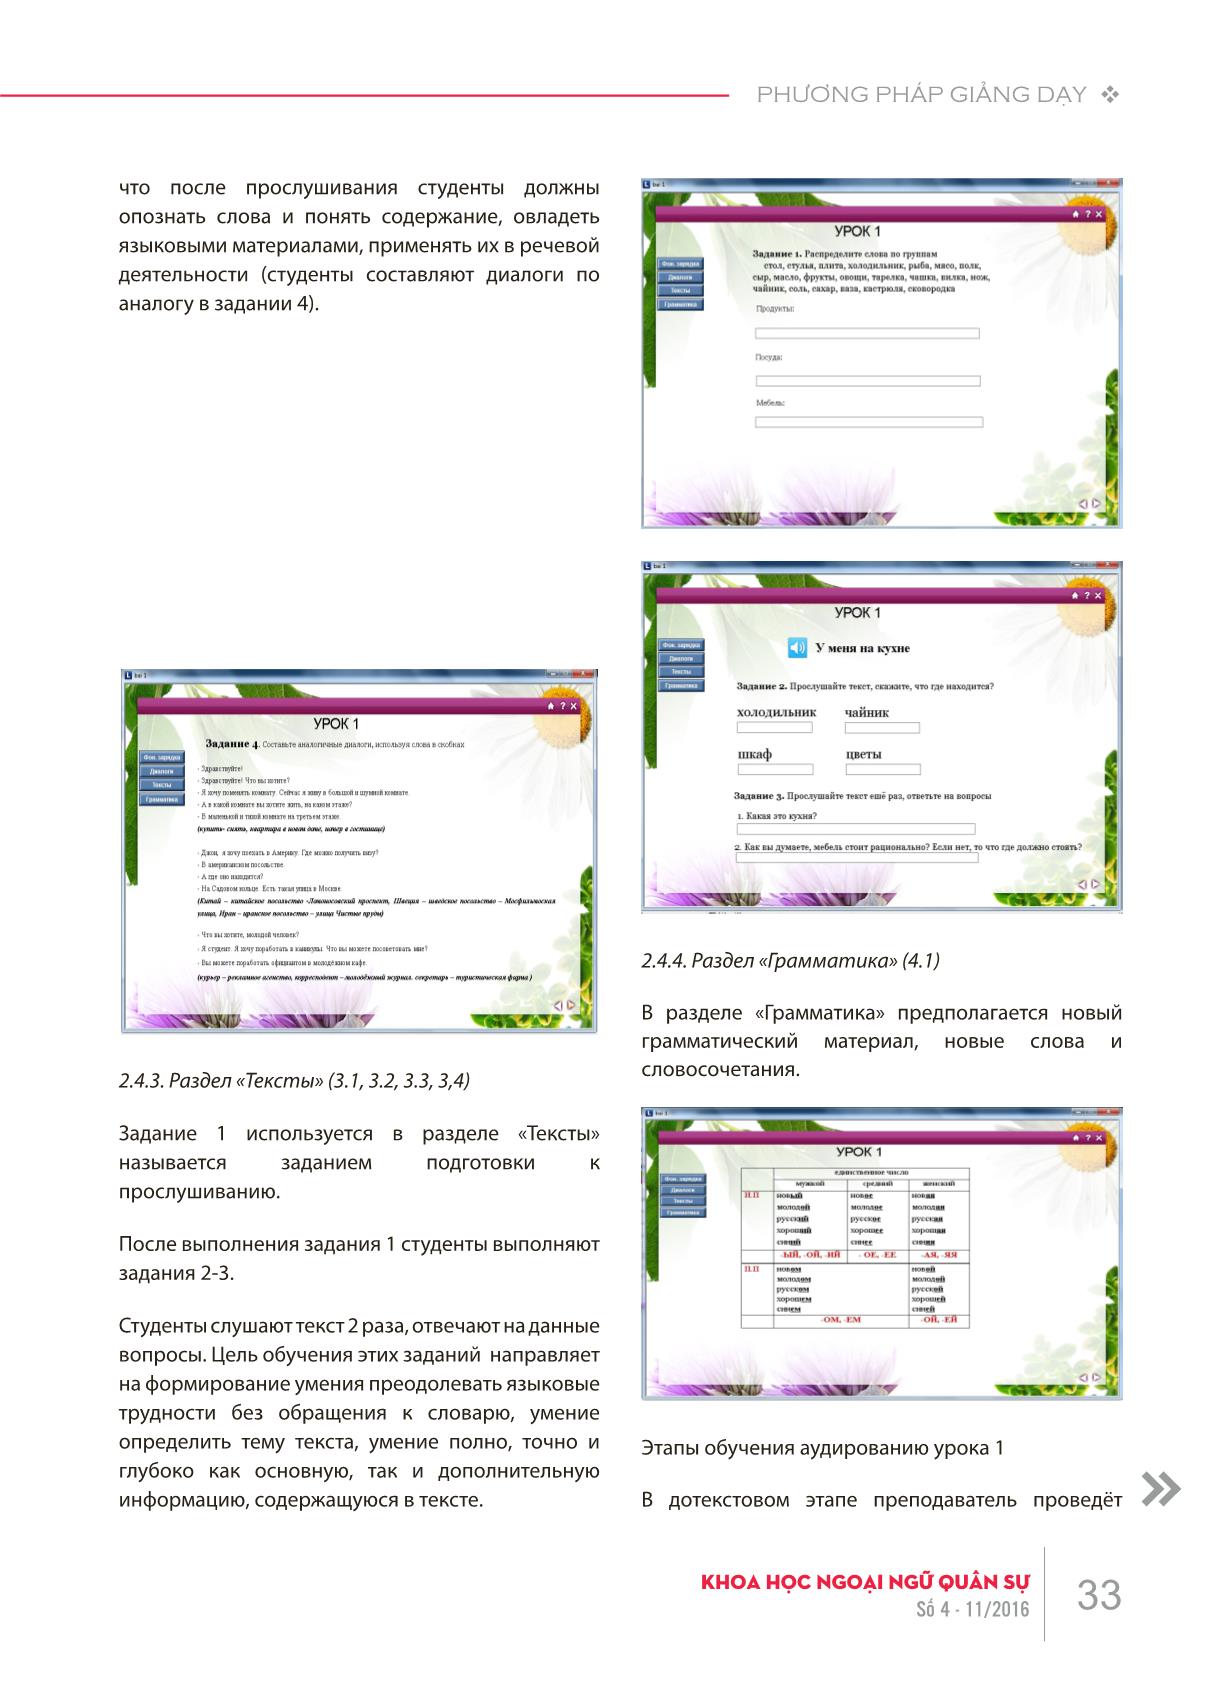 Xây dựng bài tập nghe trên máy tính cho học viên tiếng Nga giai đoạn cơ sở tại Học viện Khoa học Quân sự theo giáo trình “Đường đến nước Nga II” trang 5